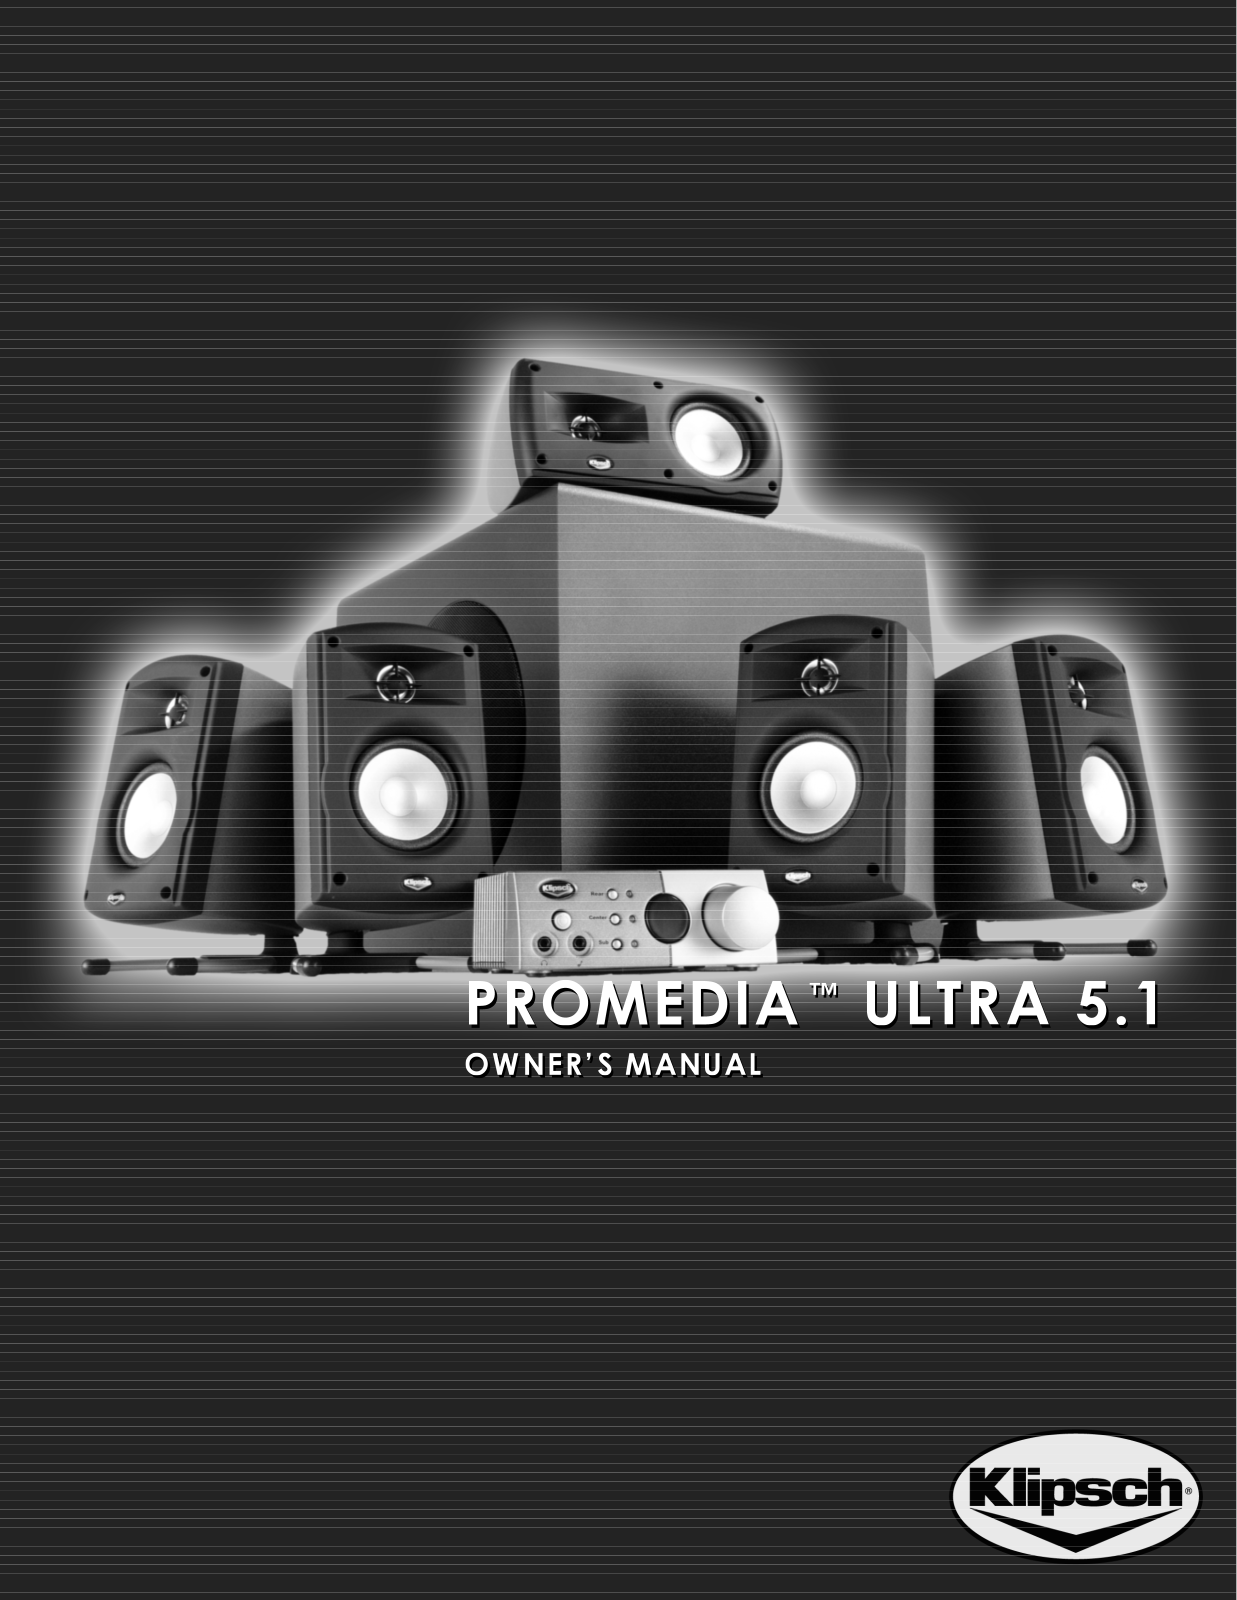 Klipsch Promedia Ultra 5.1 Owners manual